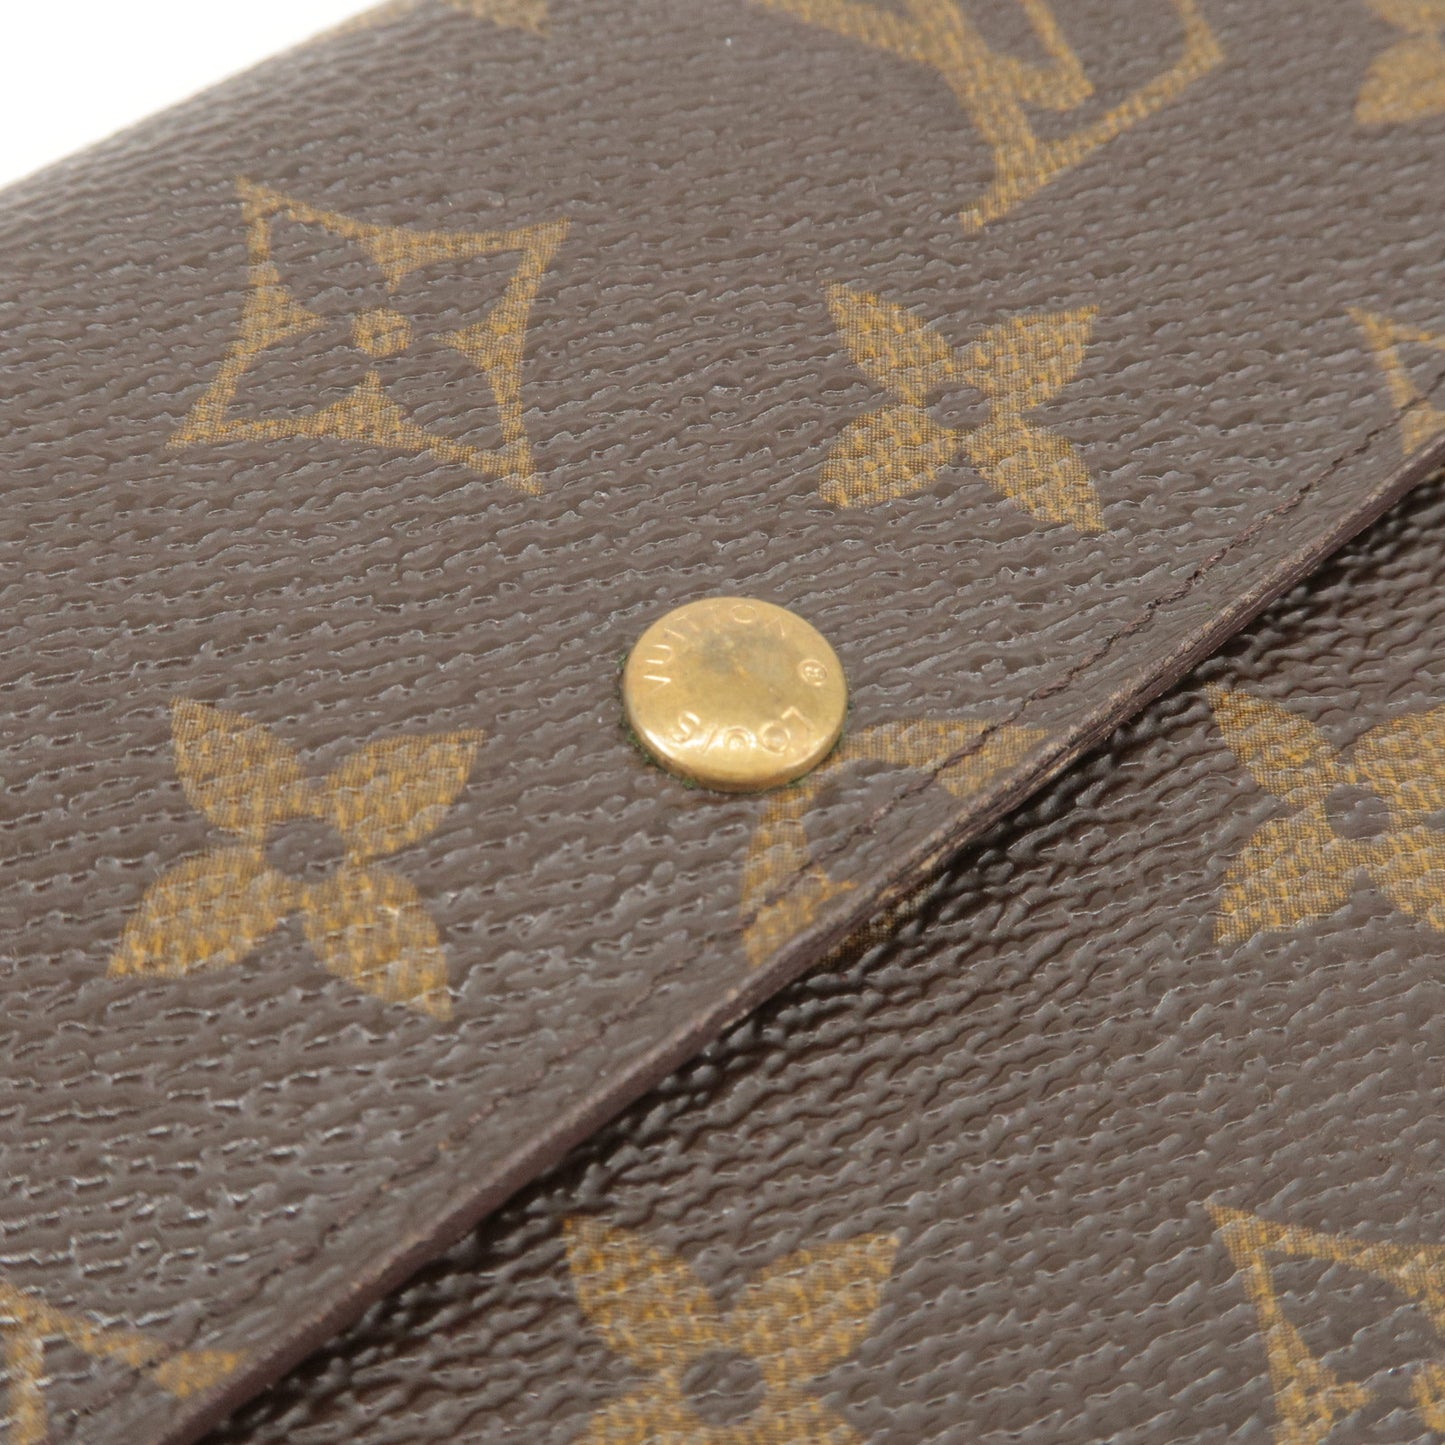 Louis Vuitton Pochette Porte Monnaie Credit Monogram Canvas M61725 Brown Wallet